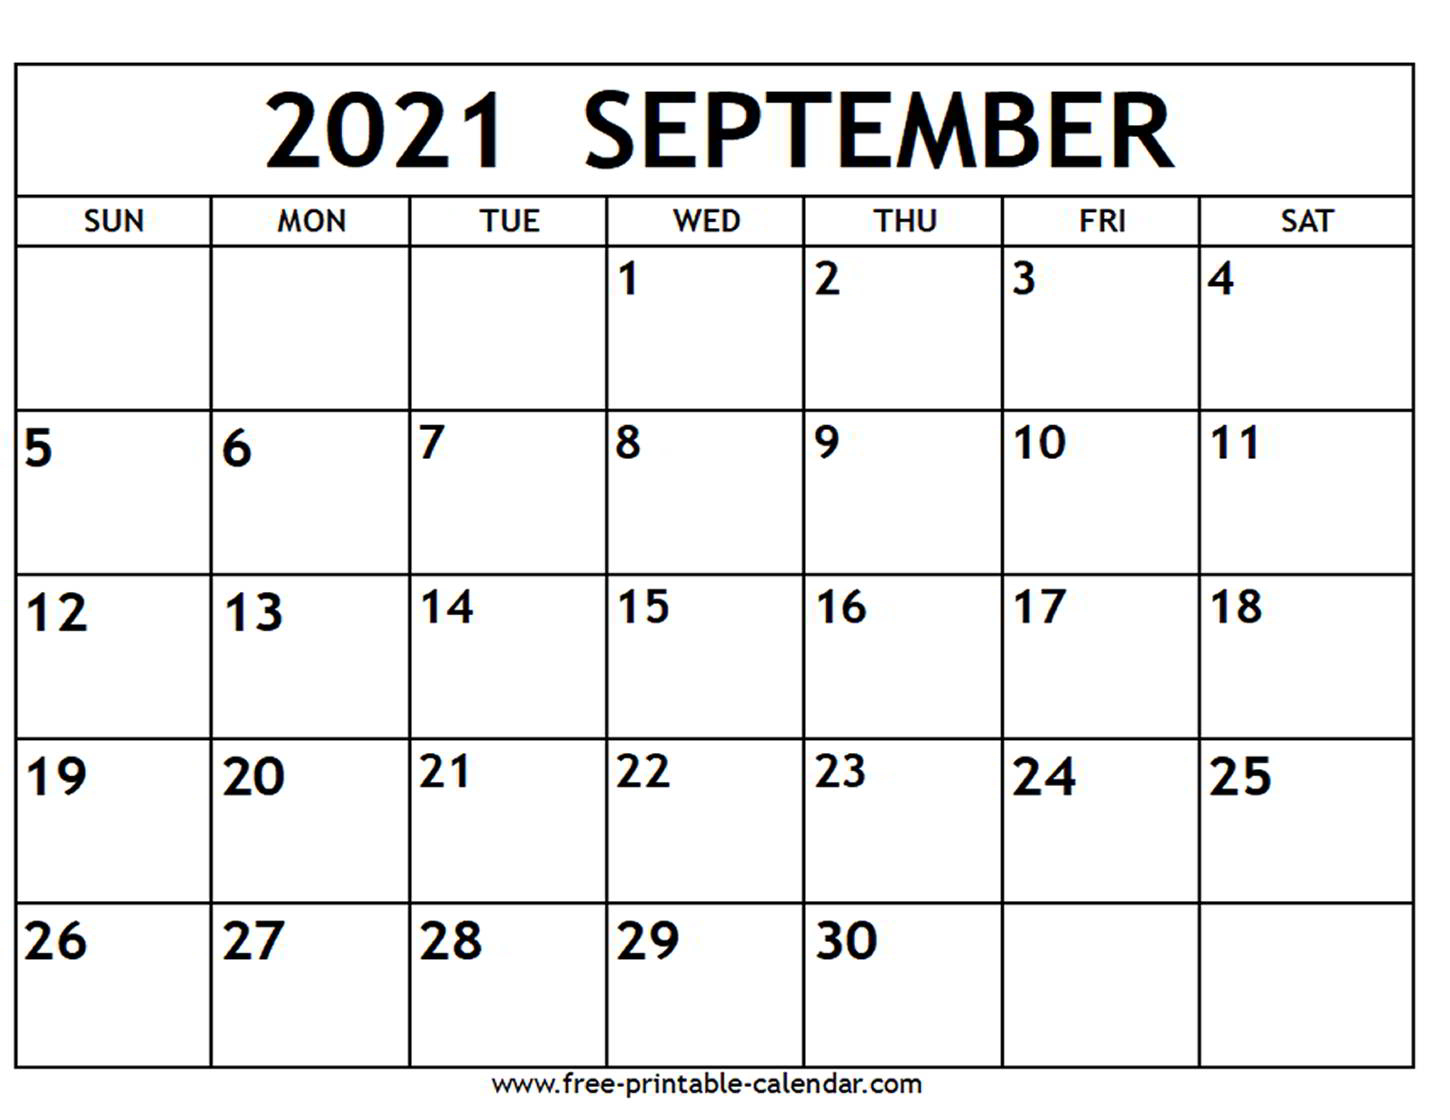 2021 November Calendar Free Printable | Example Calendar